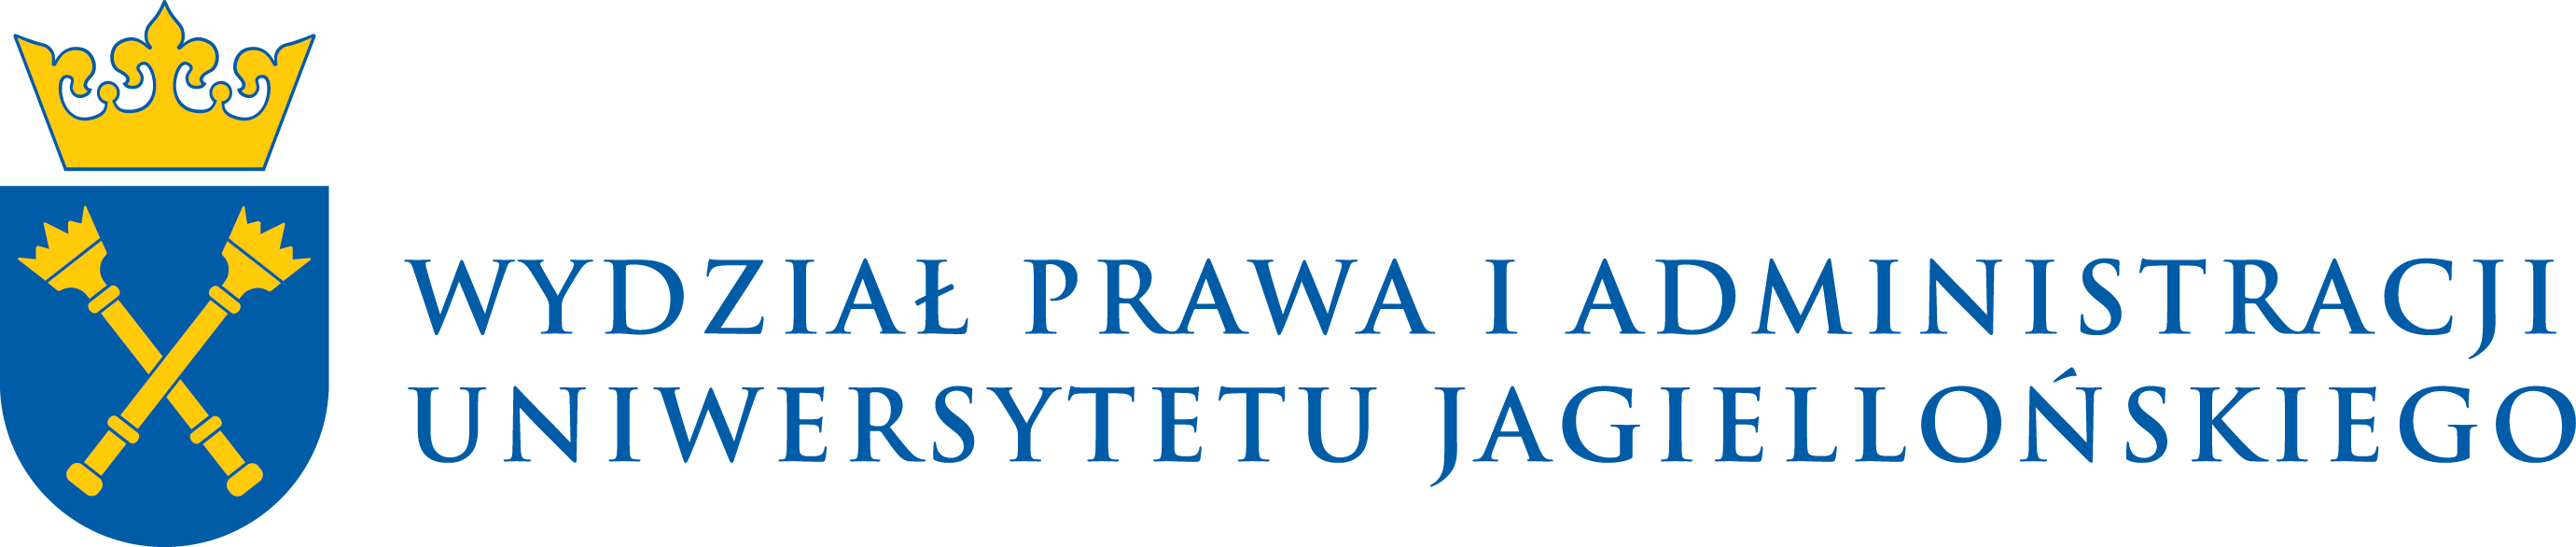 logo Wydział Prawa i Administracji UJ